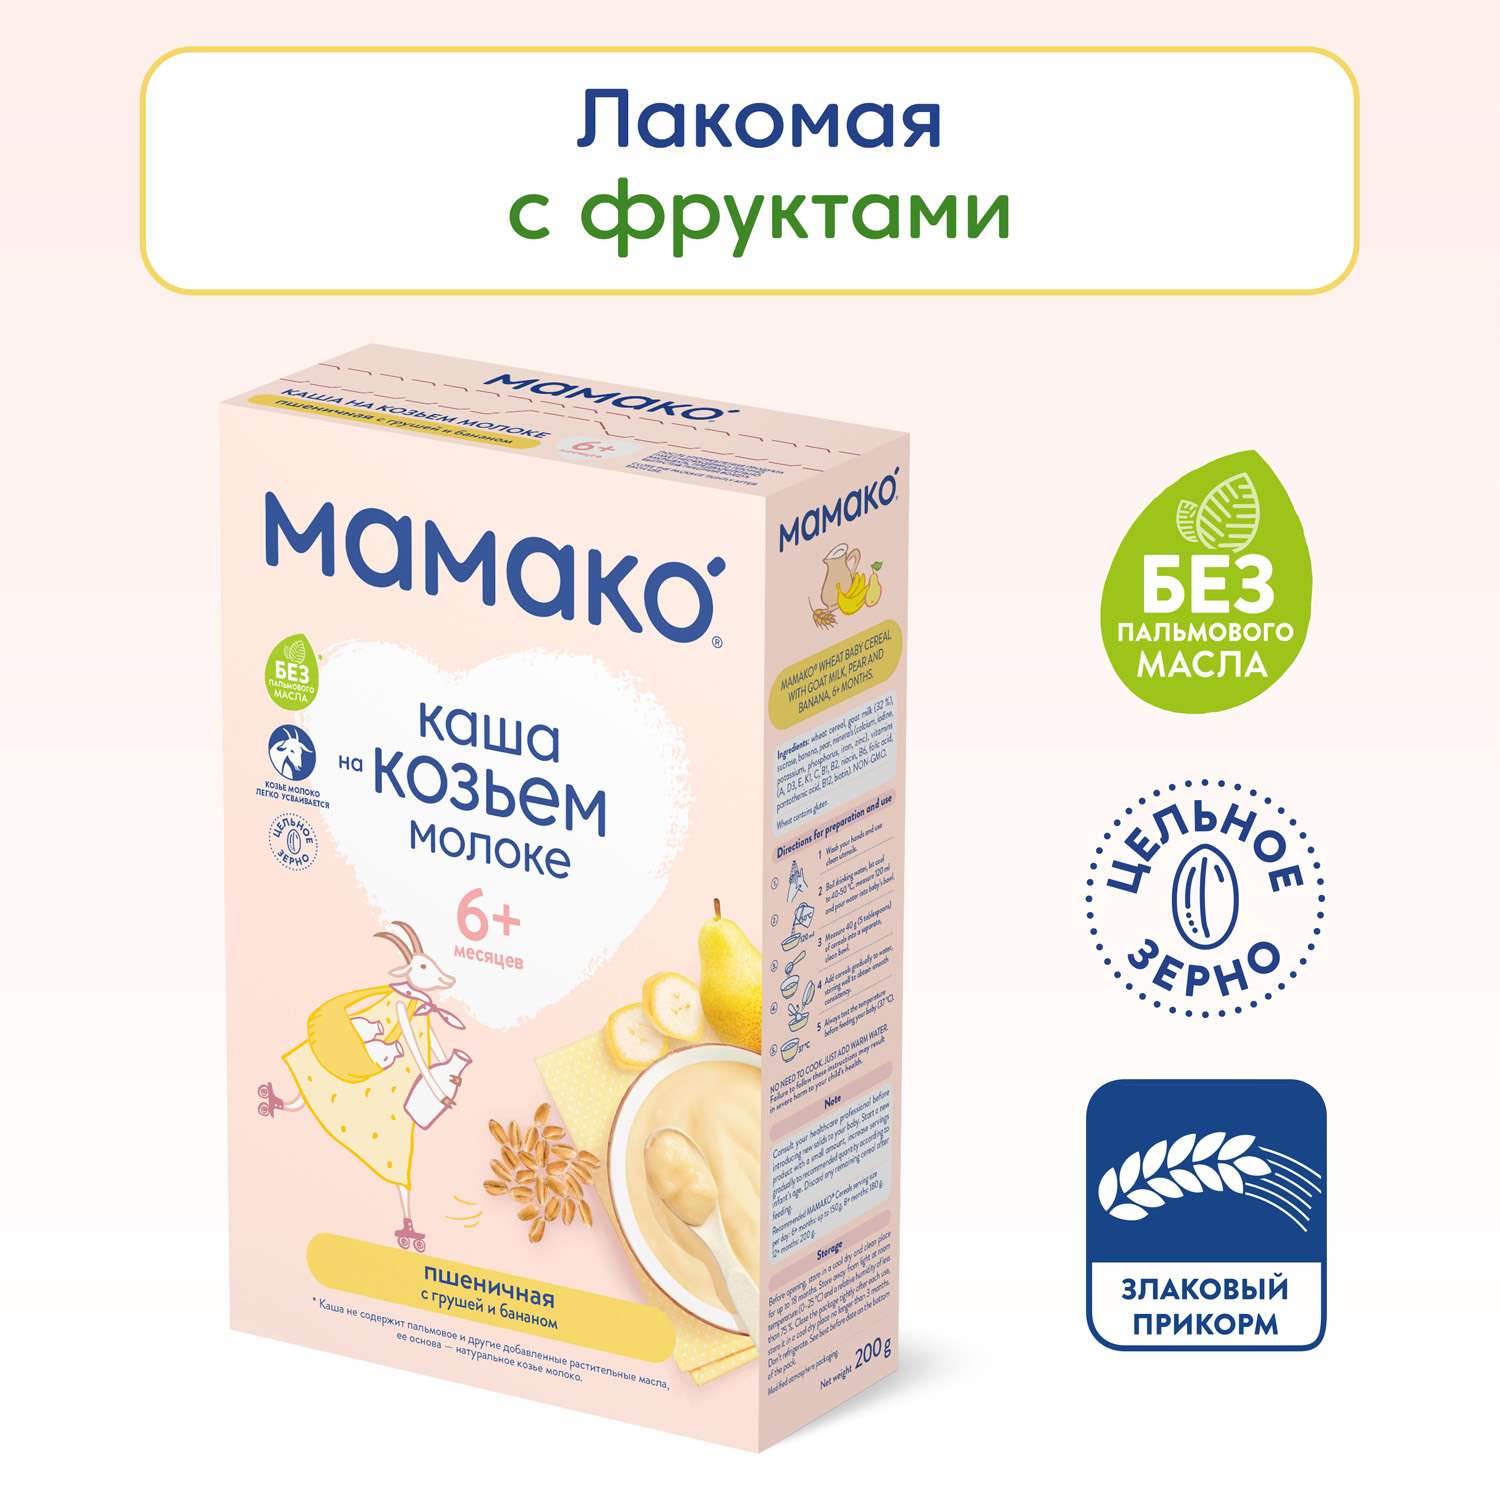 Каши, супы быстрого приготовления купить в Минске с доставкой - скидки, отзывы, доставка